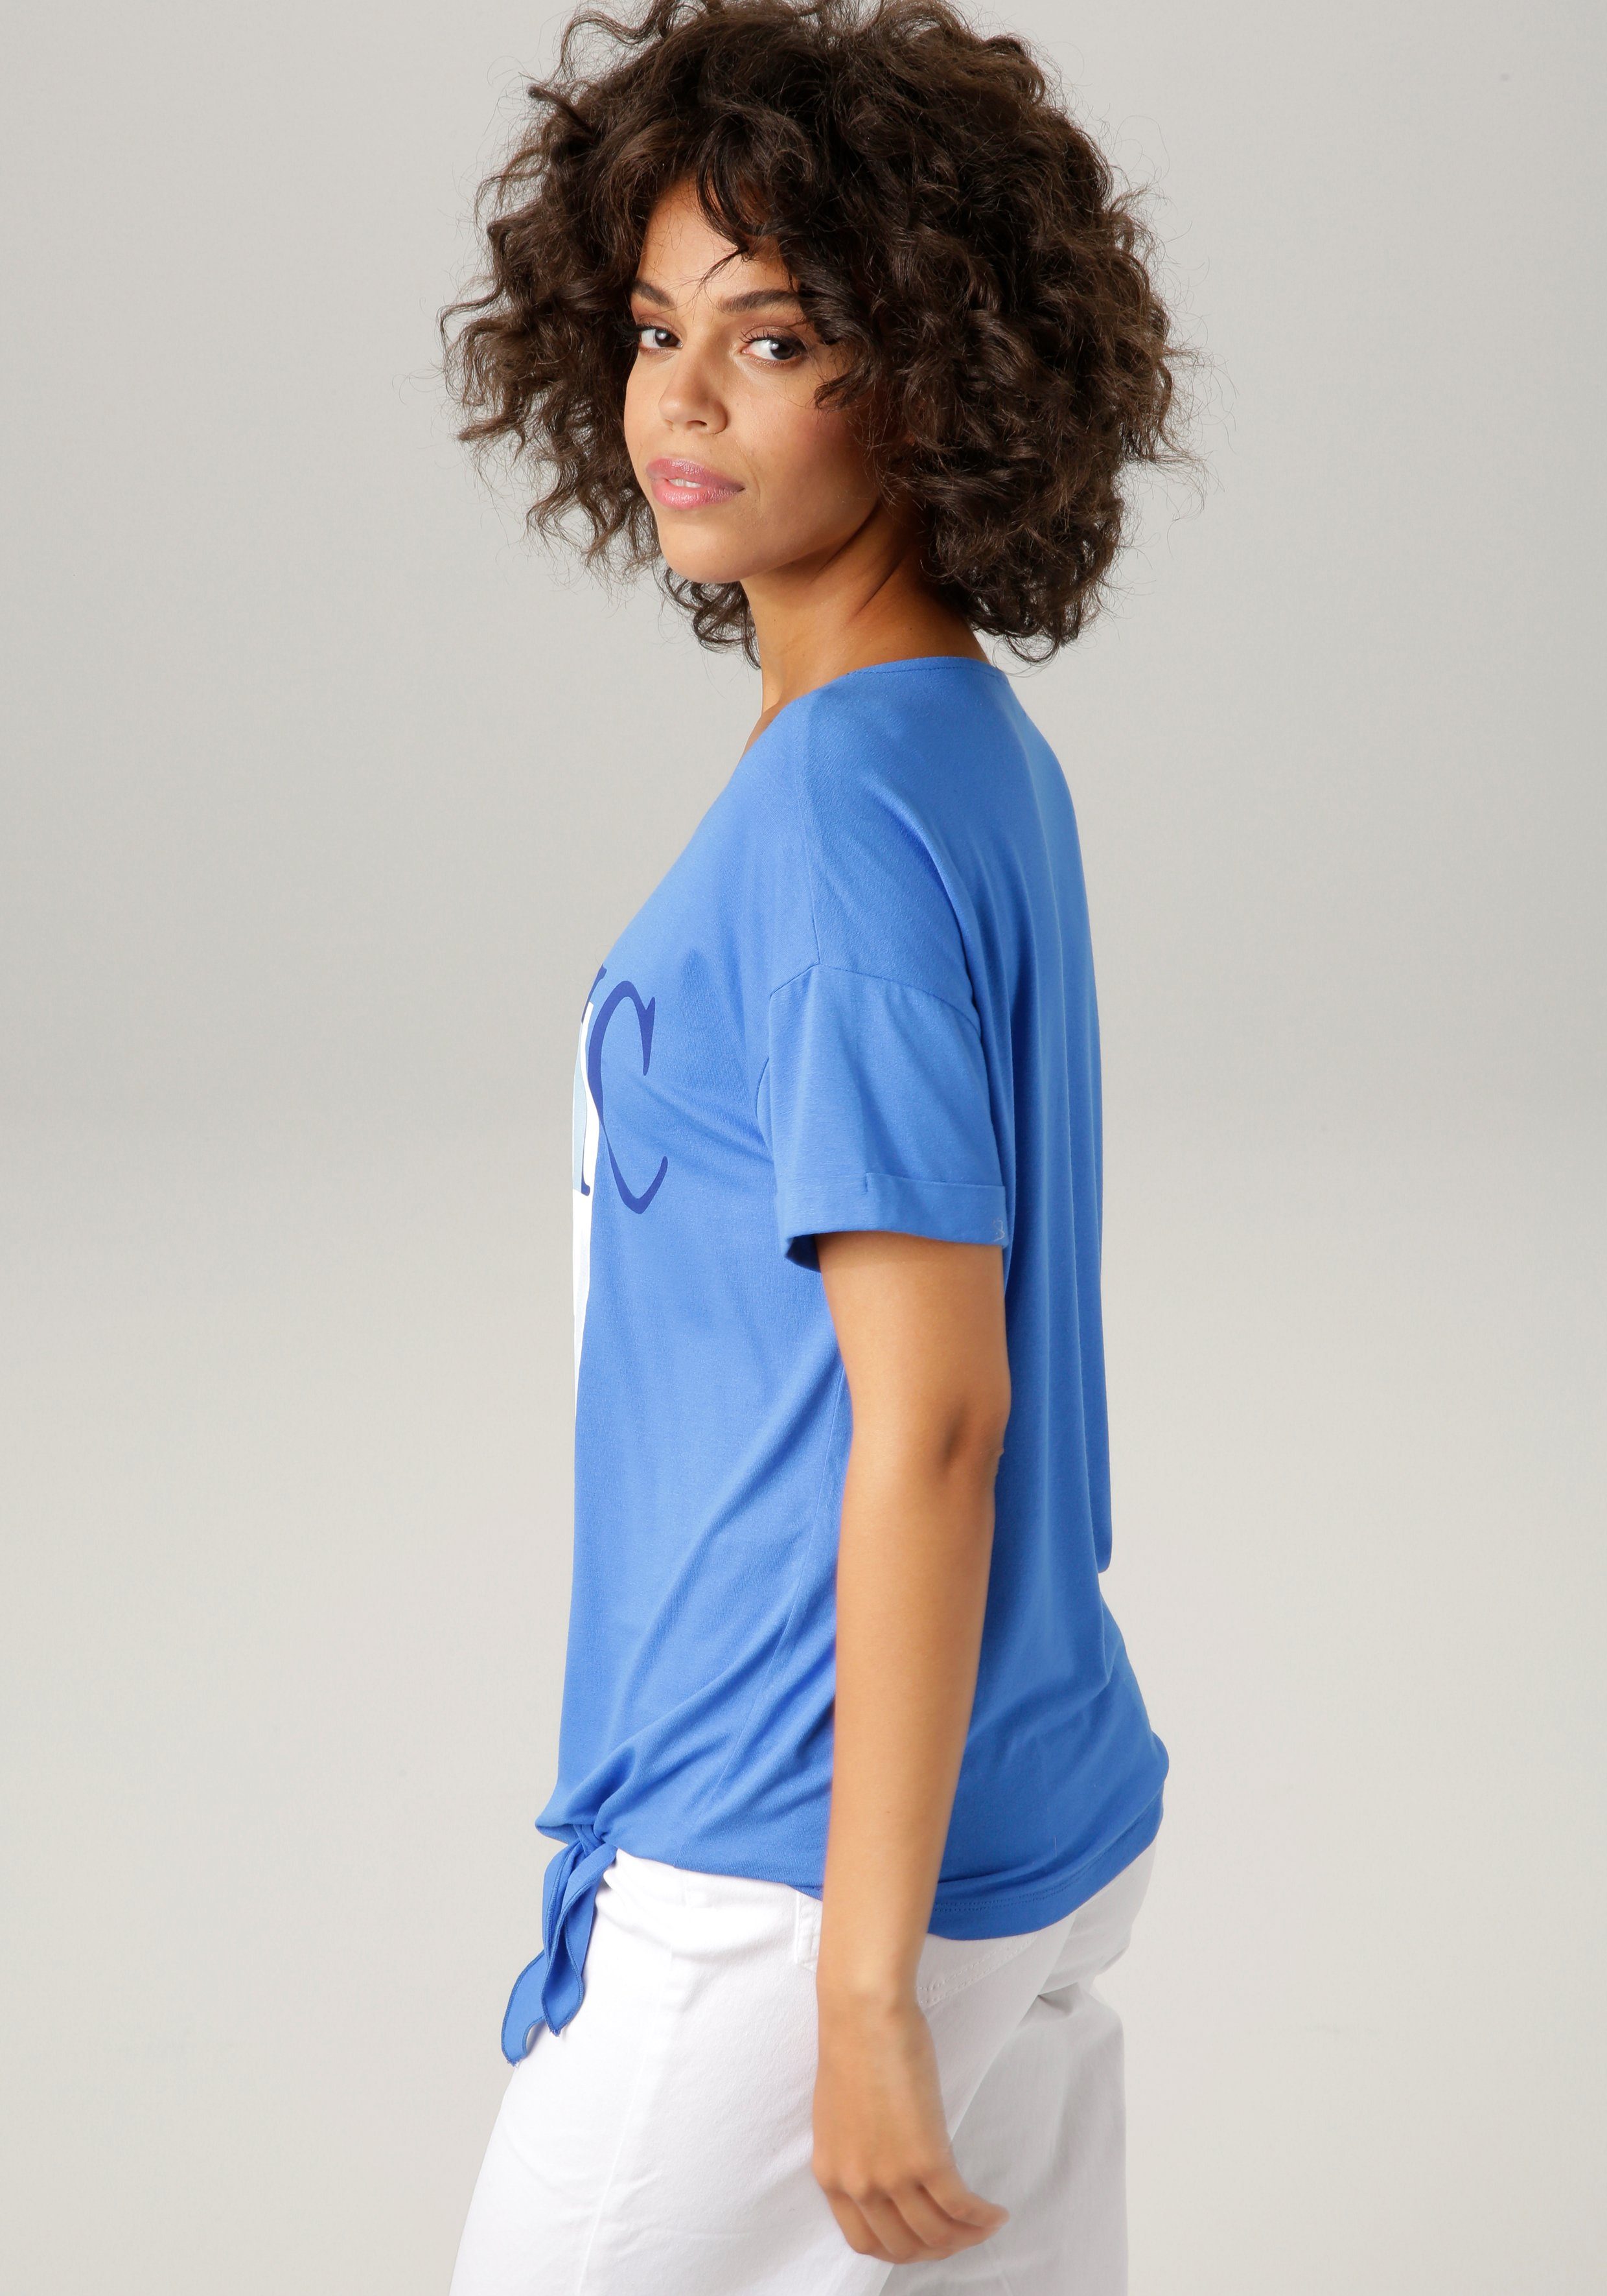 Frontdruck ausdrucksstarkem "ethnischem" mit Aniston royalblau-marine-wollweiß-hellpetrol-sand-schwarz CASUAL T-Shirt